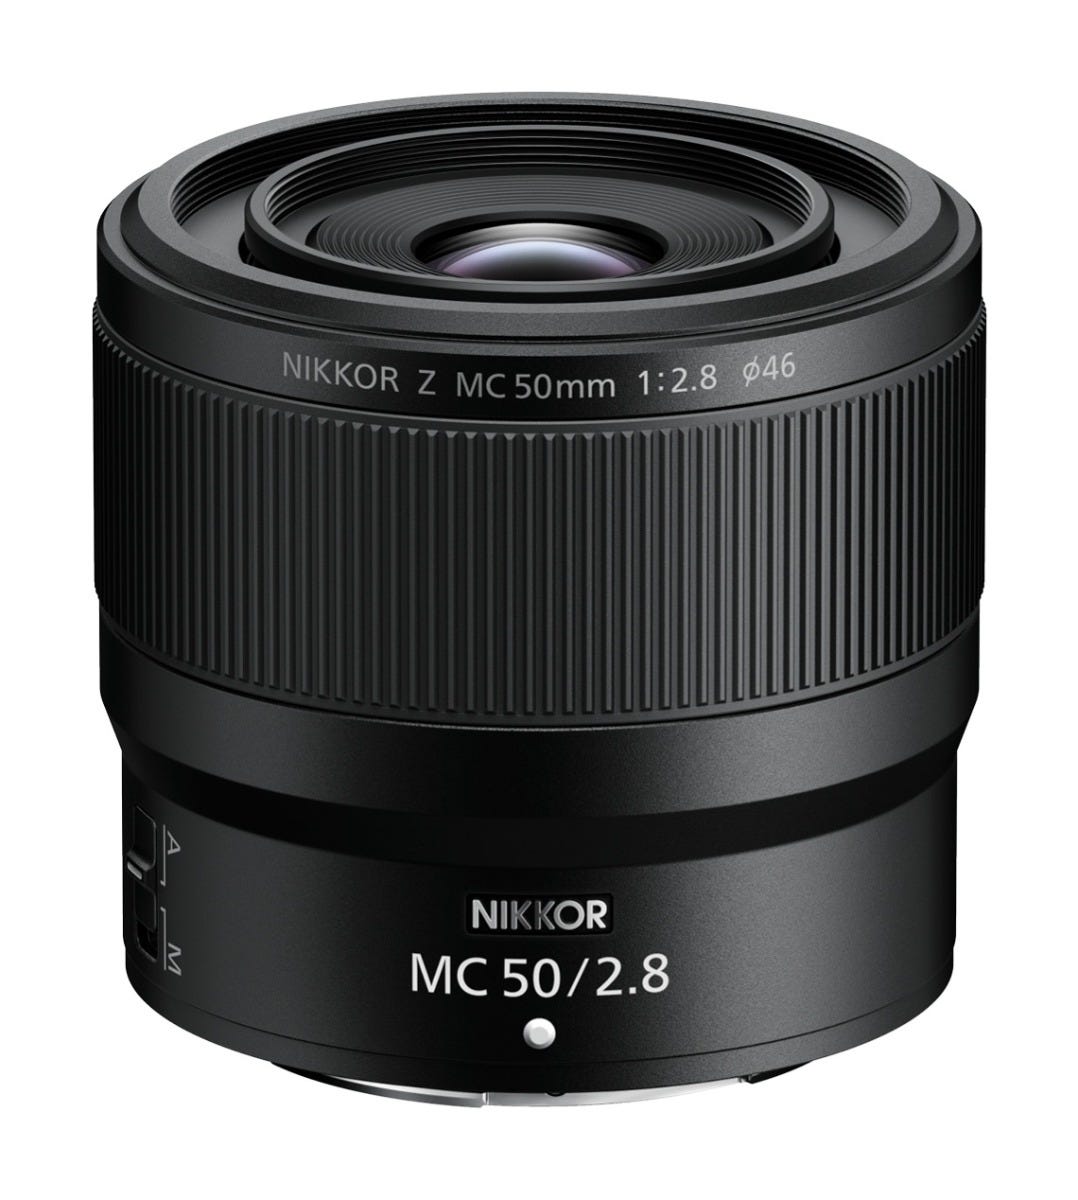 Image of Nikon Nikkor Z 50mm Macro f/2.8 Lens